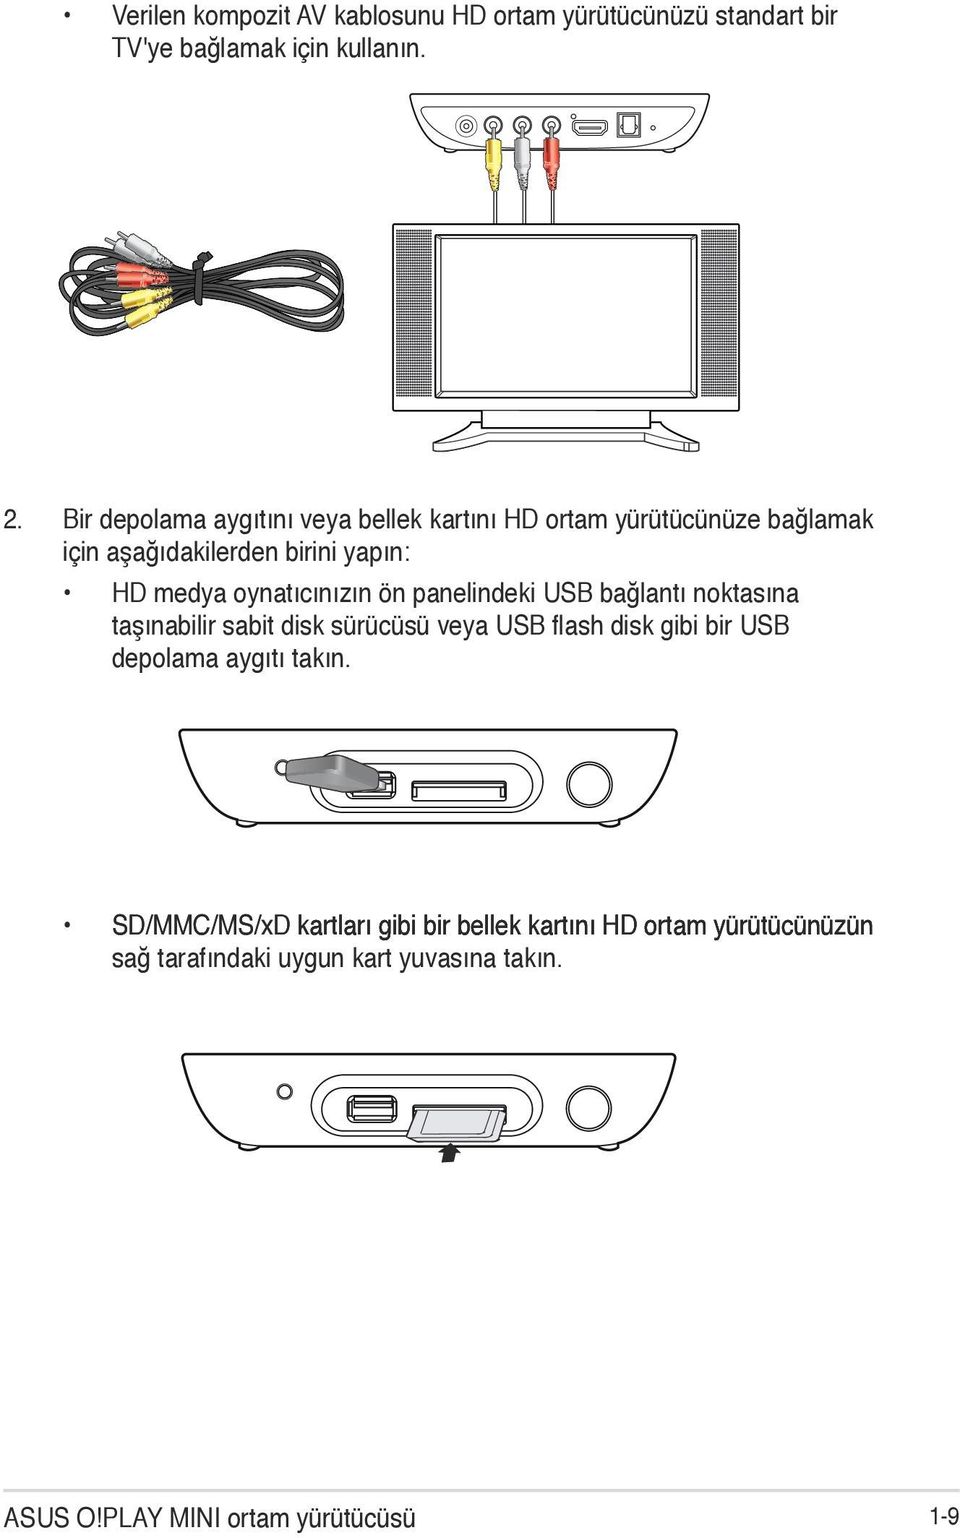 oynatıcınızın ön panelindeki USB bağlantı noktasına taşınabilir sabit disk sürücüsü veya USB flash disk gibi bir USB depolama